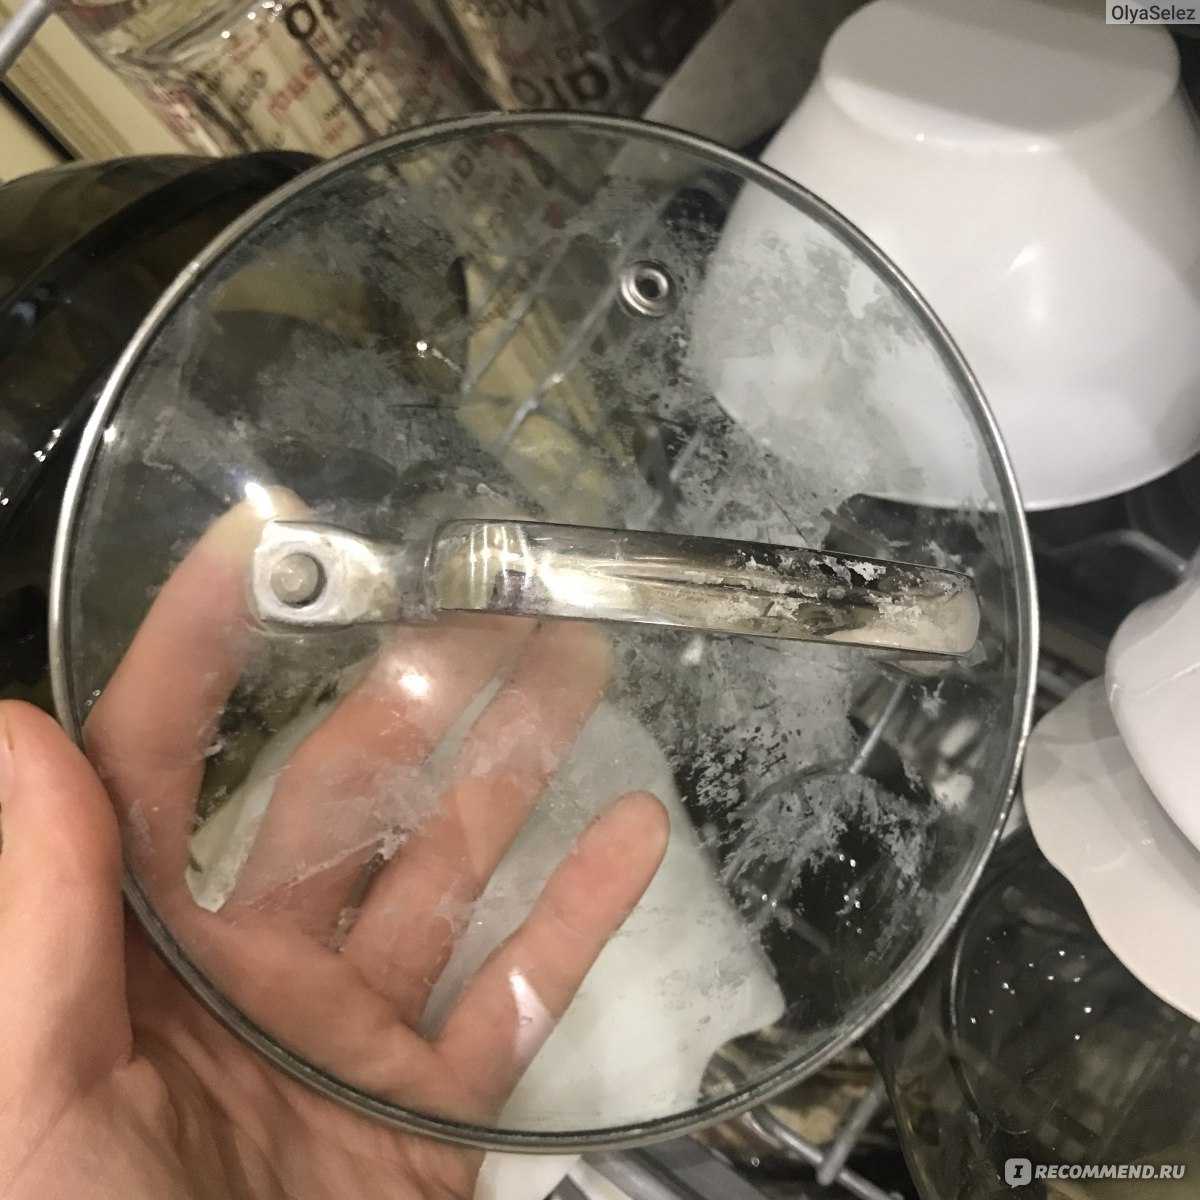 Почему налет в посудомоечной машине. Белый налет на посуде и в посудомоечной машине. Налёт на посуде после посудомойки. После посудомойки посуда в белом налете. Белый налет на стекле после посудомойки.